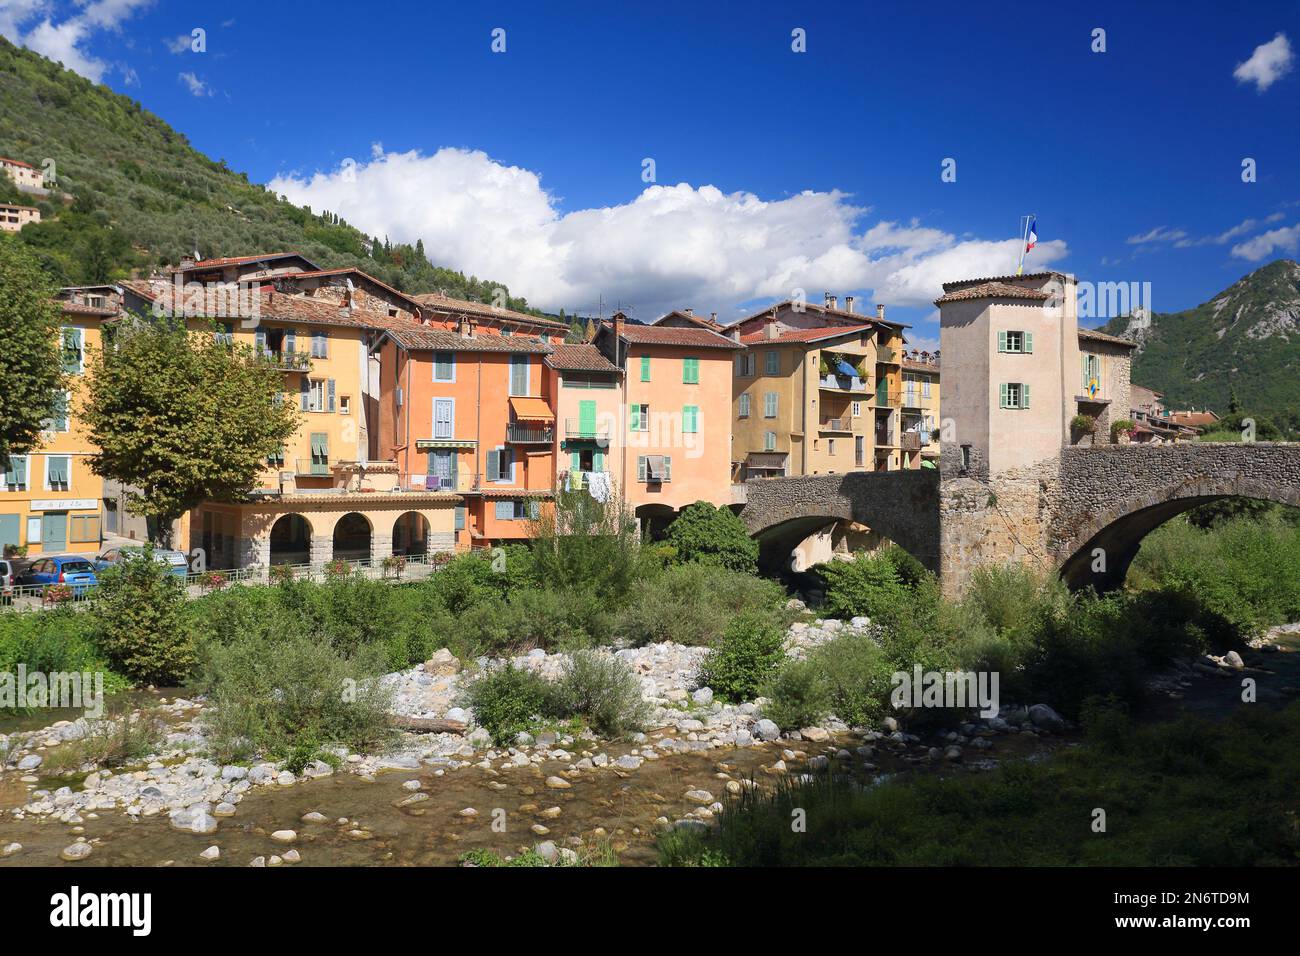 Pont medieval de Sospel, vallee de la Bevera, Alpes Maritimes, 06, Cote d'Azur, France Stock Photo